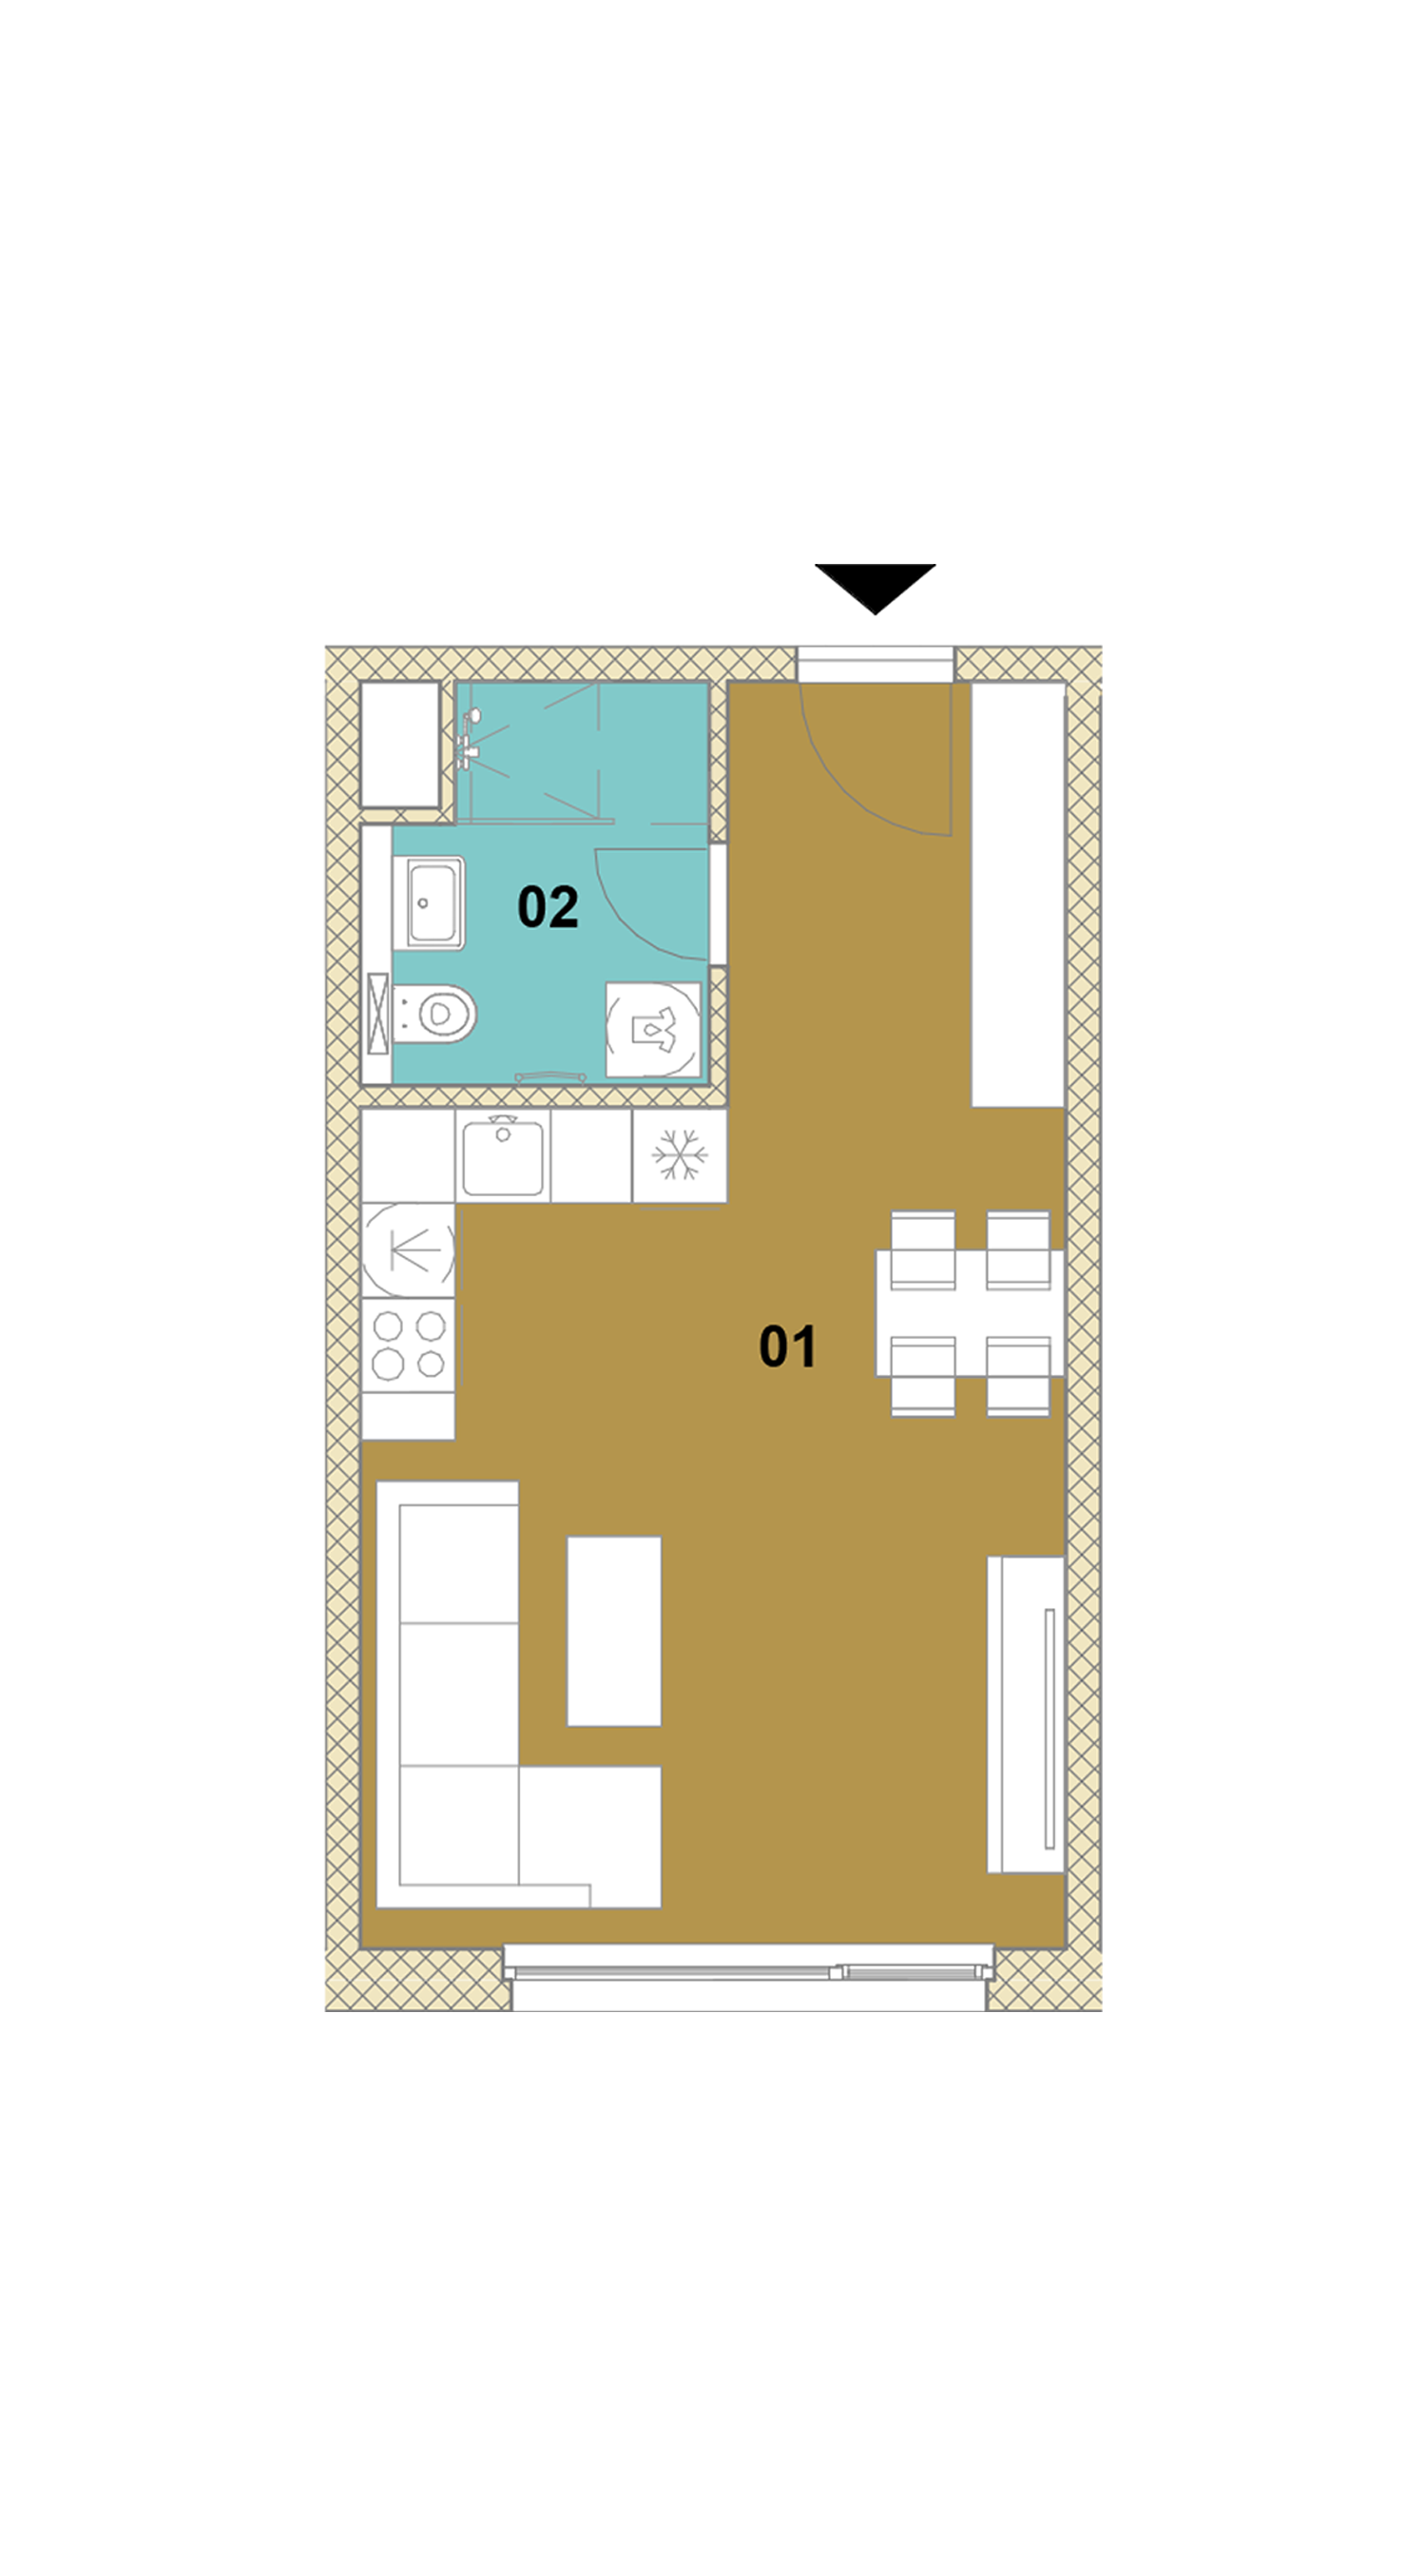 Jednoizbový byt E1-203